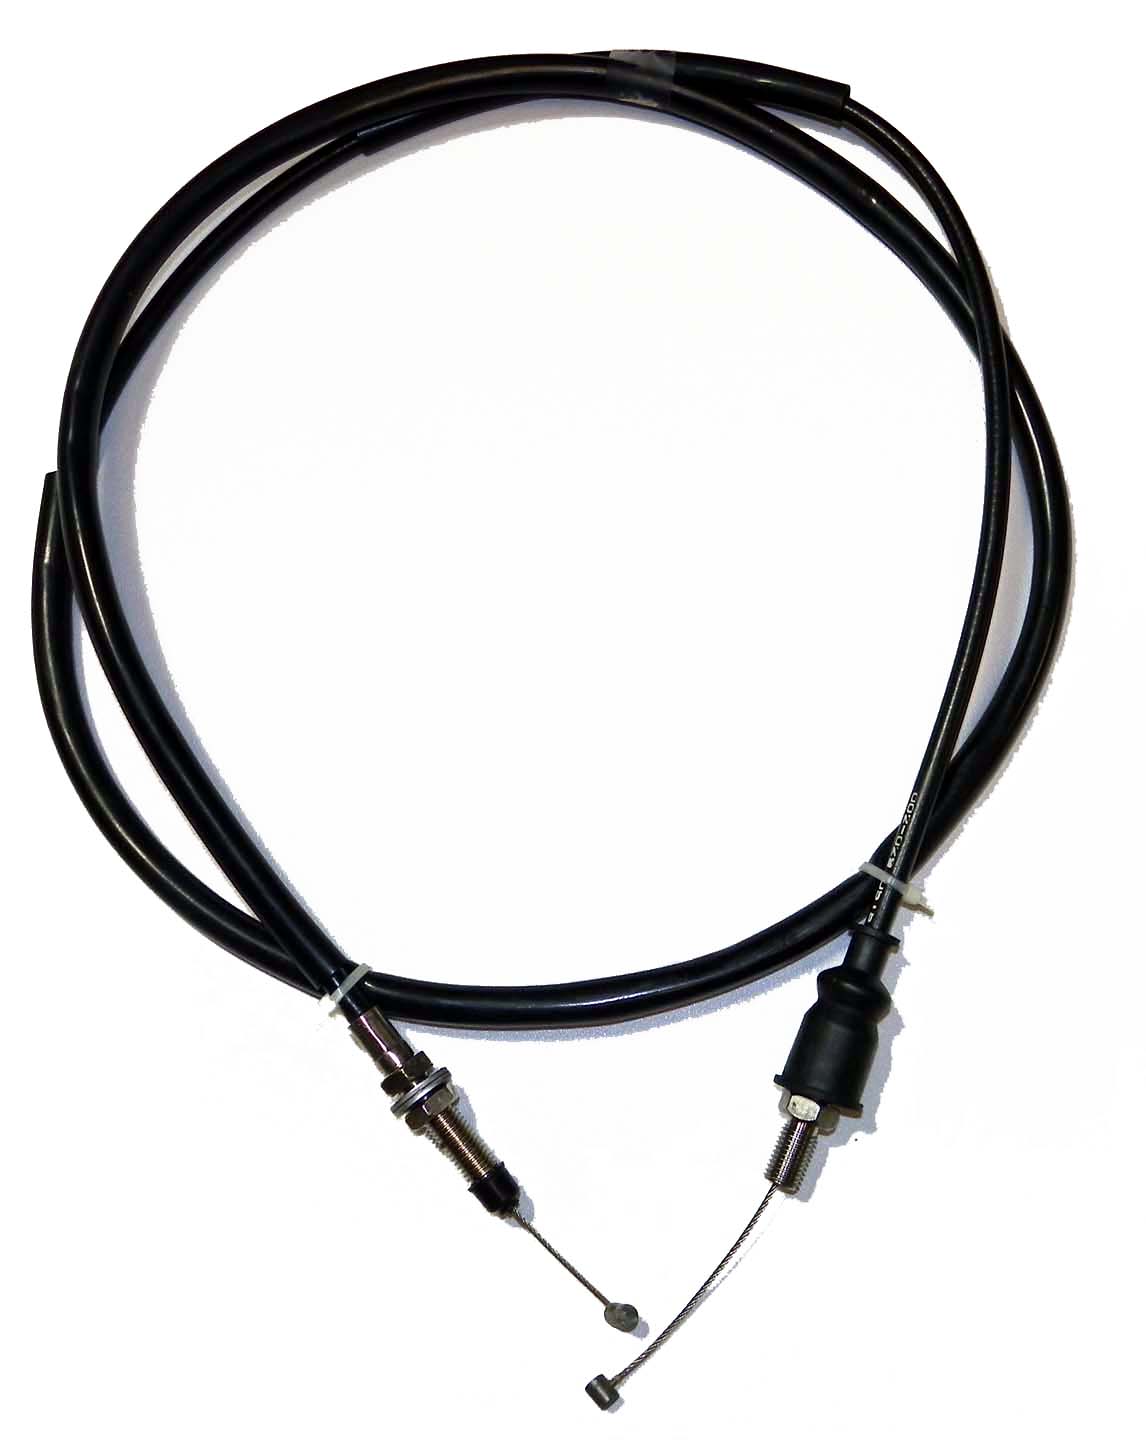 Throttle Cable - Kawasaki PWC (540123738)